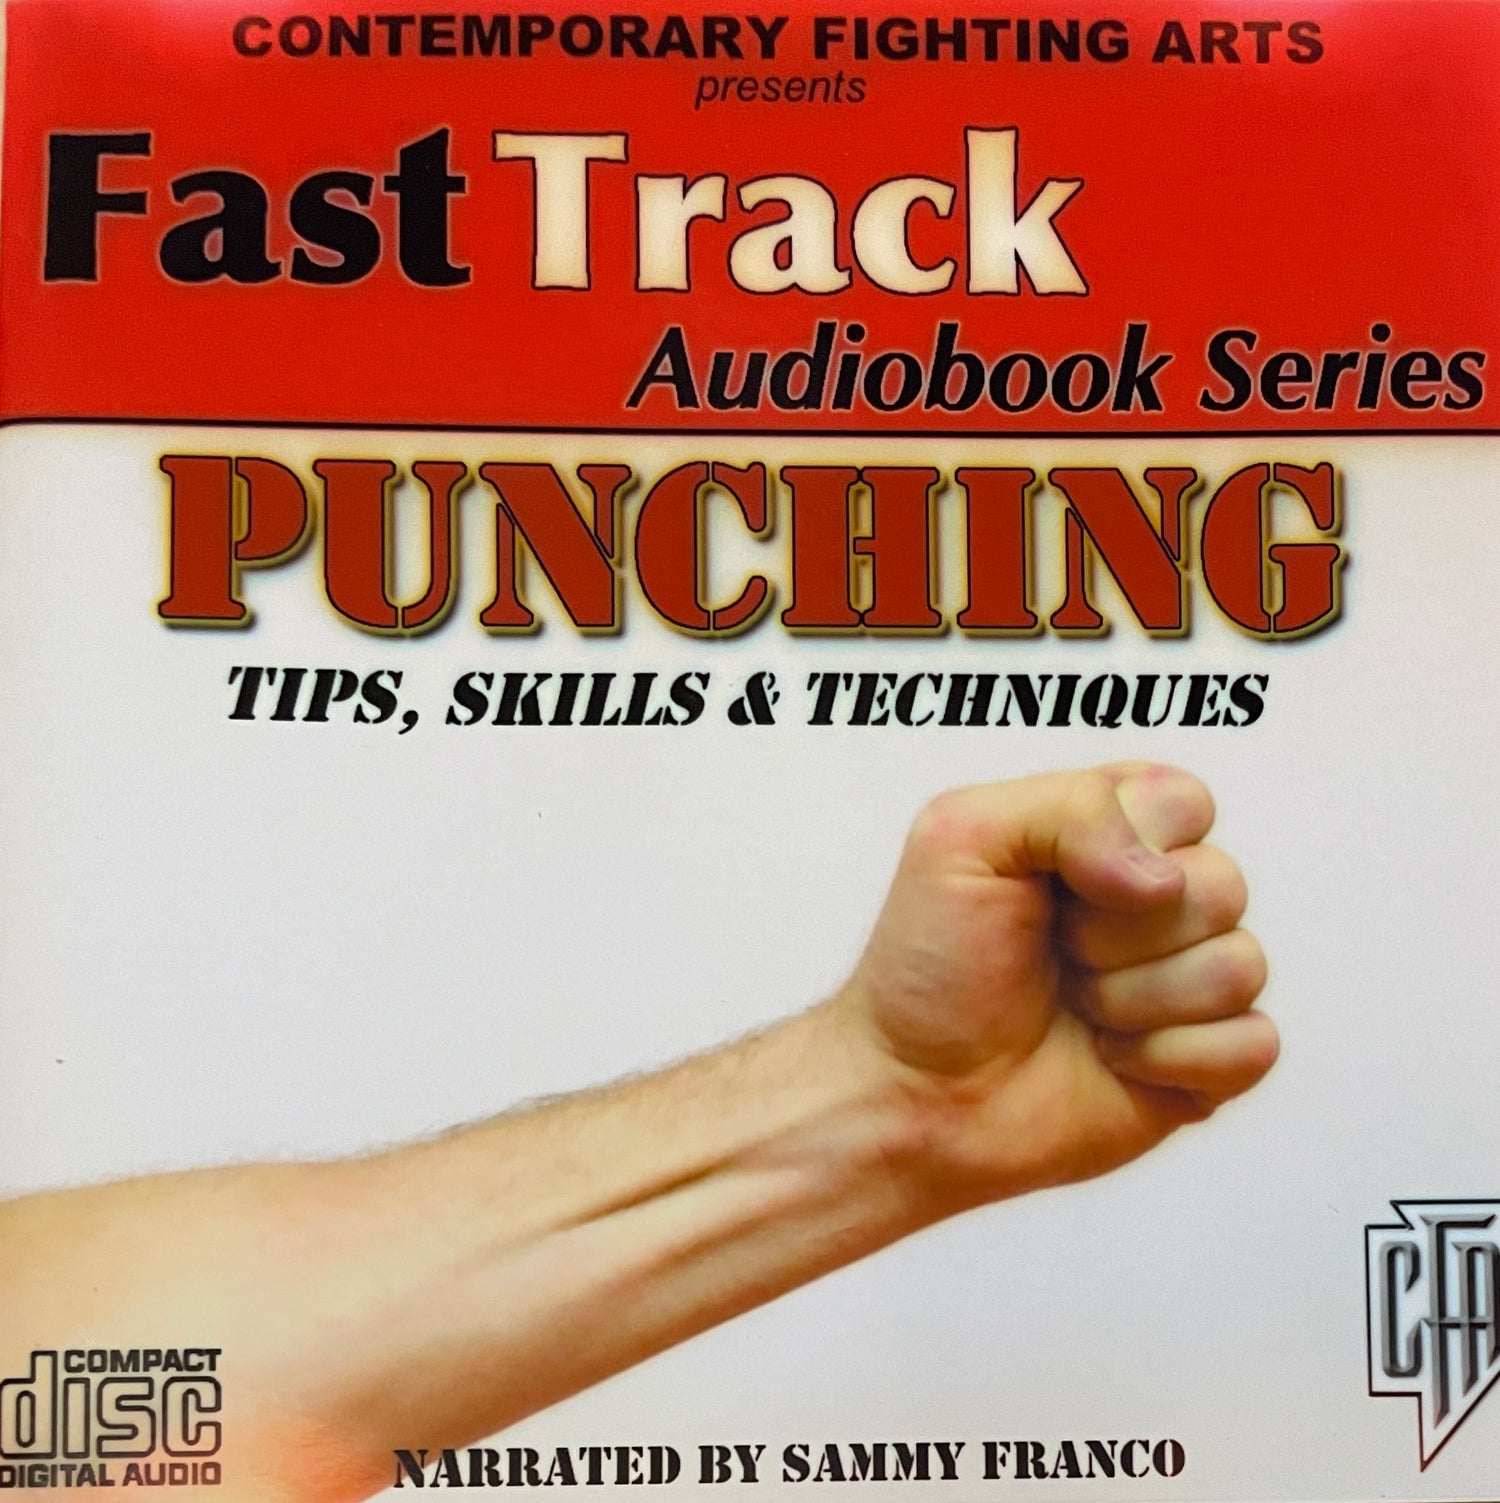 Audiolibro en CD con consejos, habilidades y técnicas de punzonado de Sammy Franco (usado)